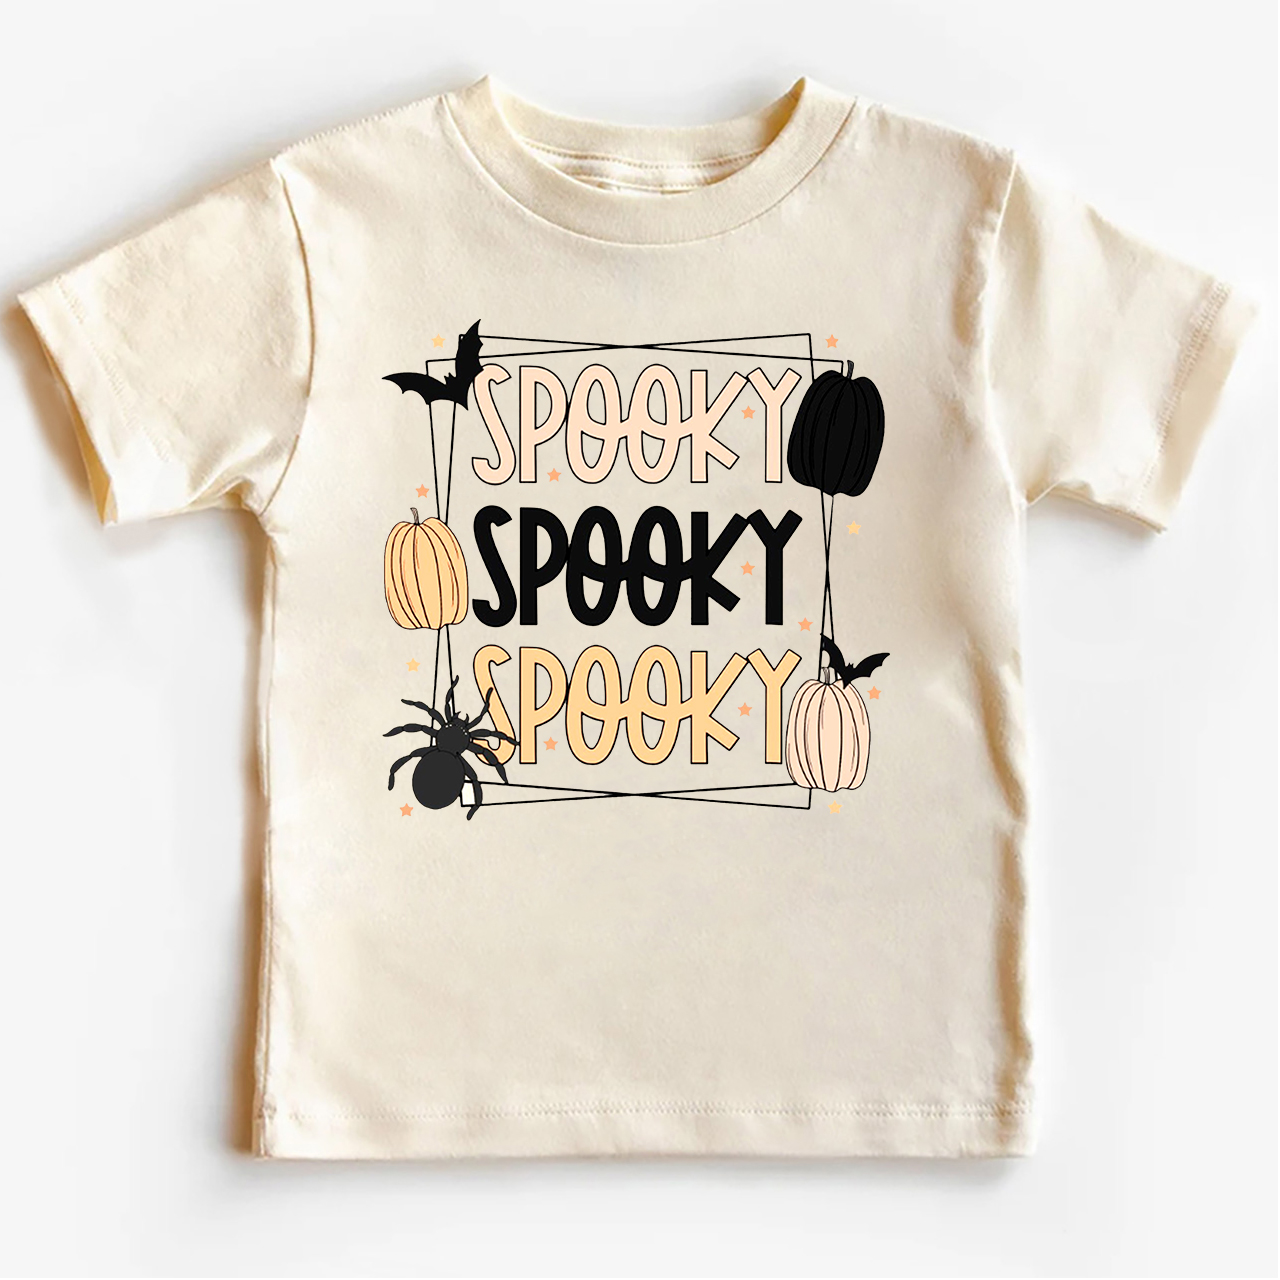 Spooky Spooky Spooky - Halloween Kids Shirt